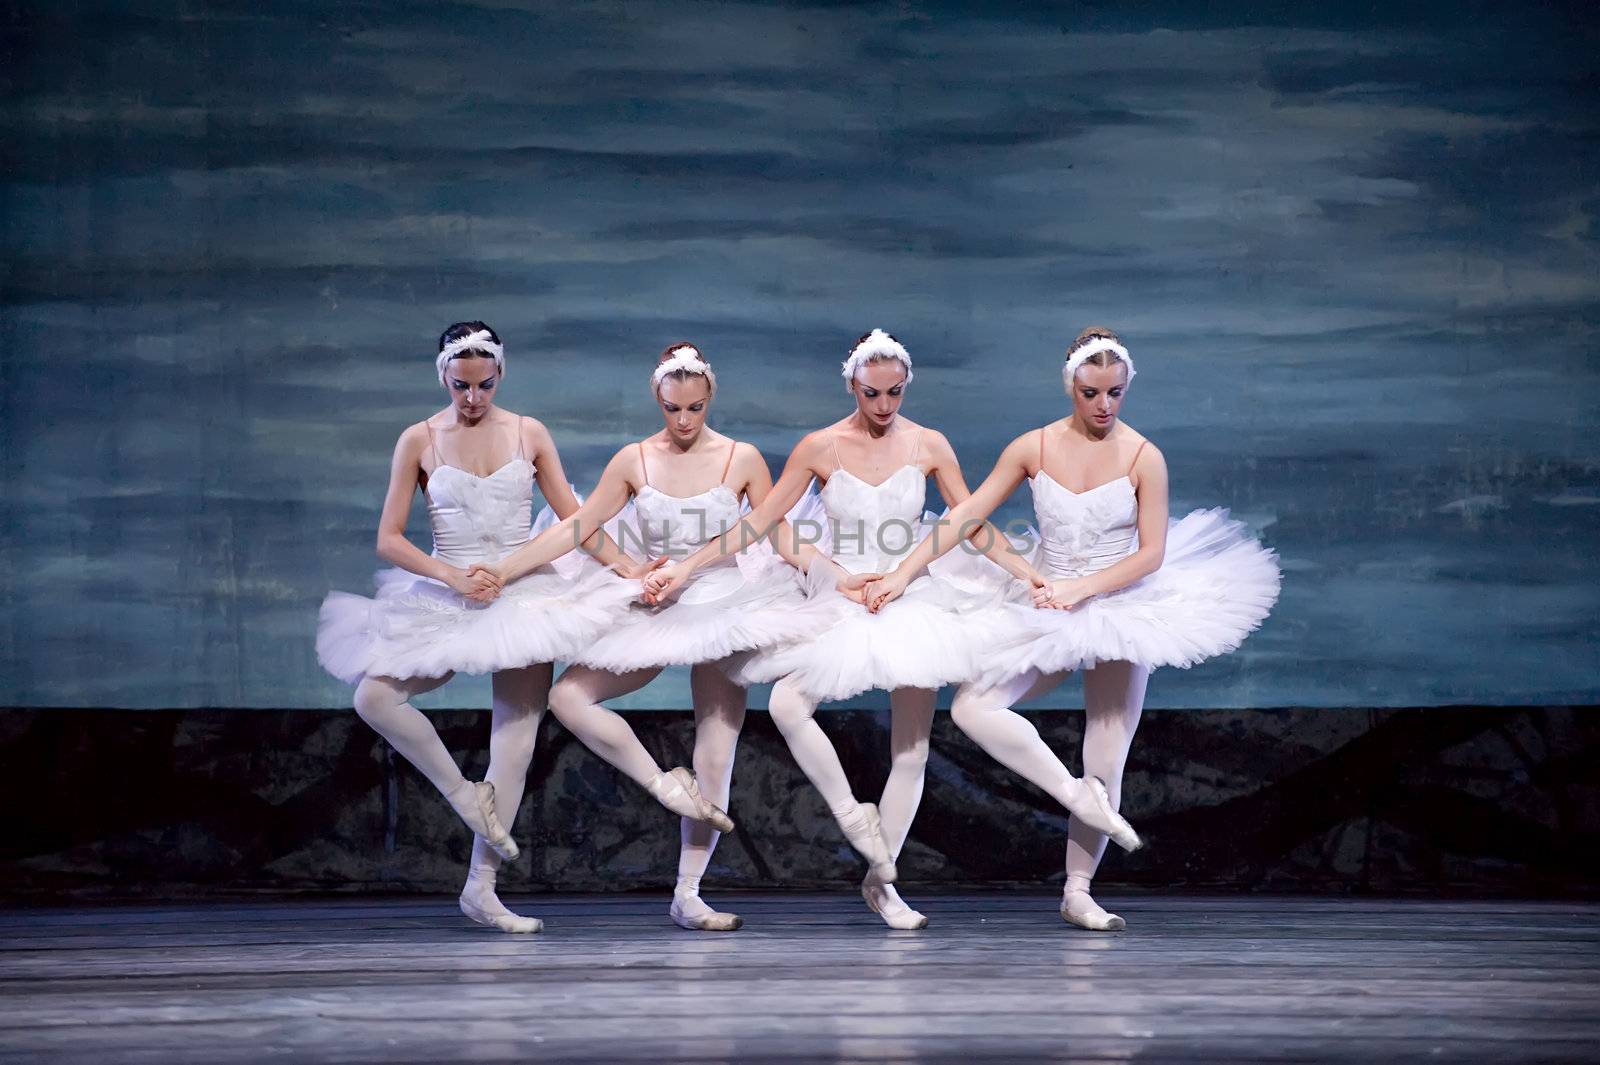 Swan Lake ballet dancers by jackq